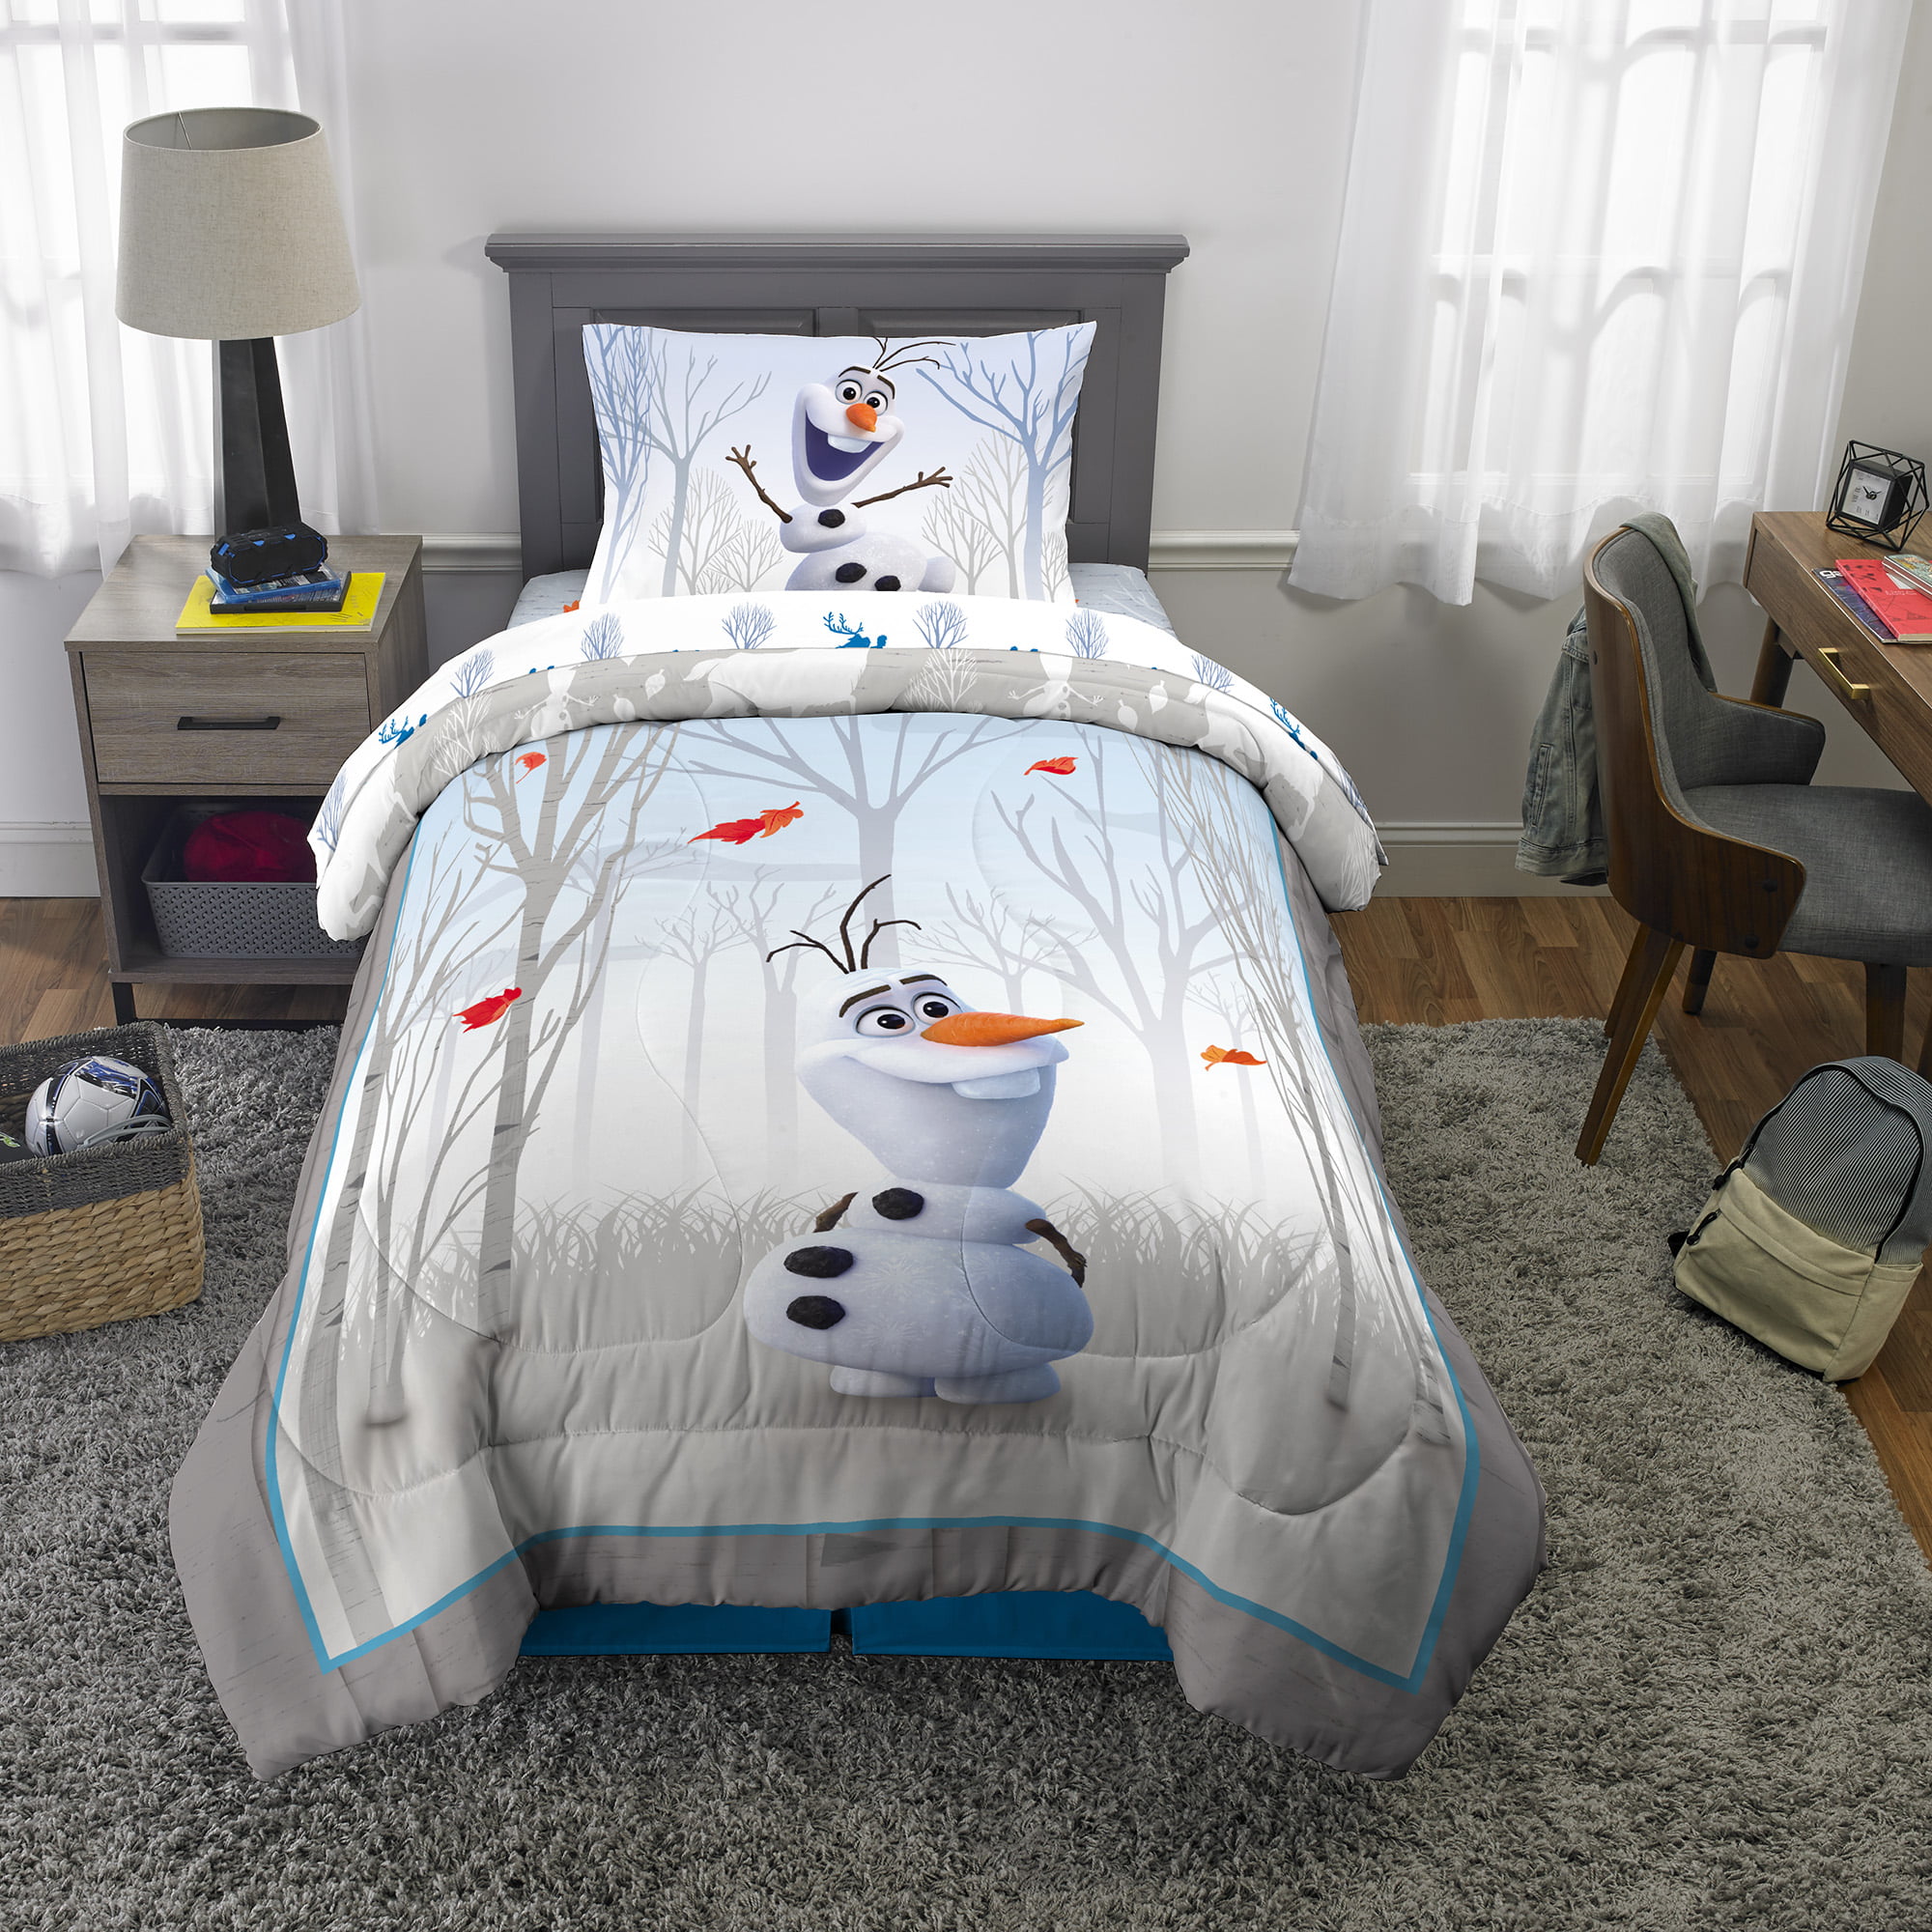 Disney Frozen Olaf Sheet Set Twin or Full kids bedding new in packaging 